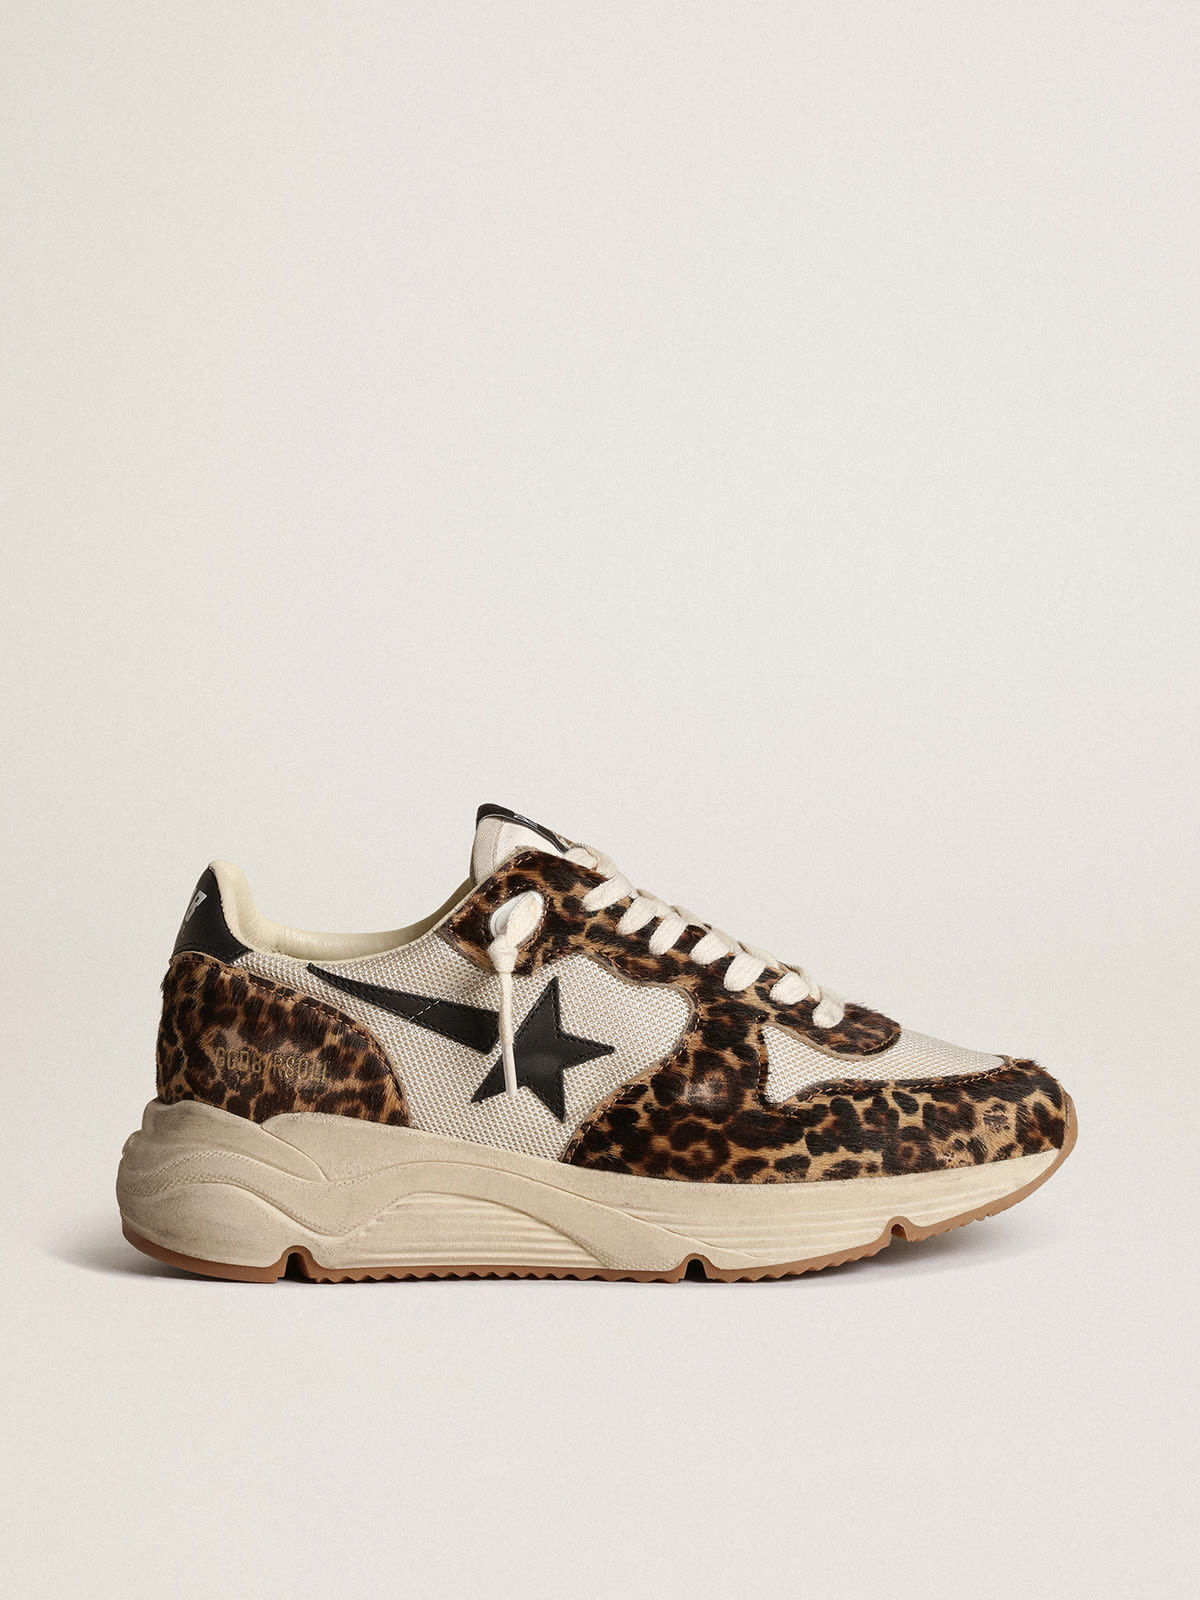 Golden Goose - Sneaker Running Sole in rete color crema con inserti in cavallino leopardato e stella in pelle nera in 